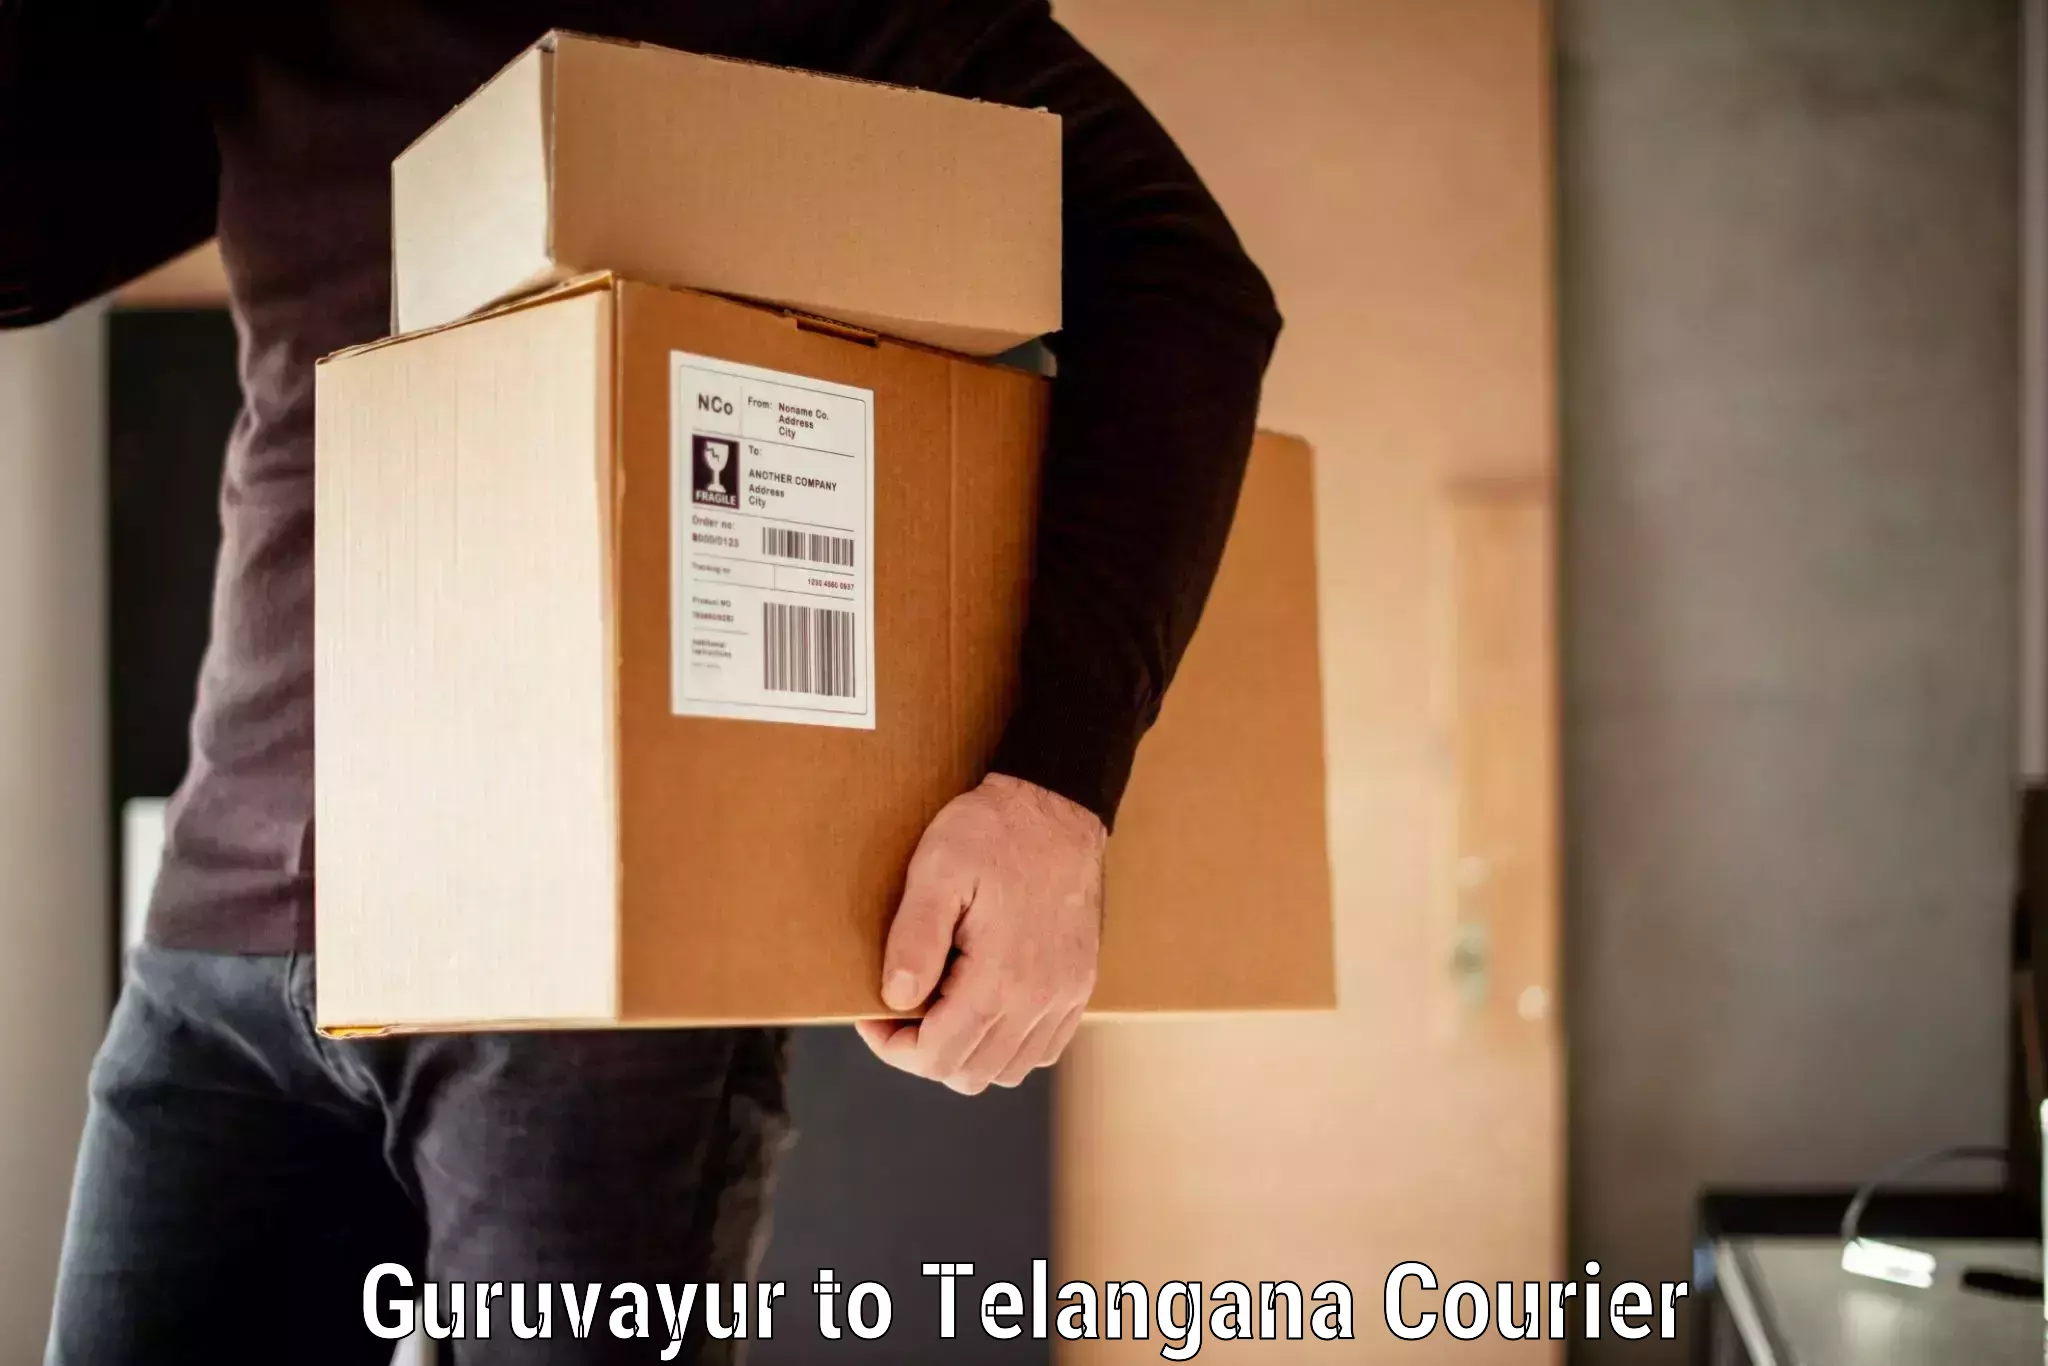 Baggage transport cost Guruvayur to Dharmapuri Jagtial